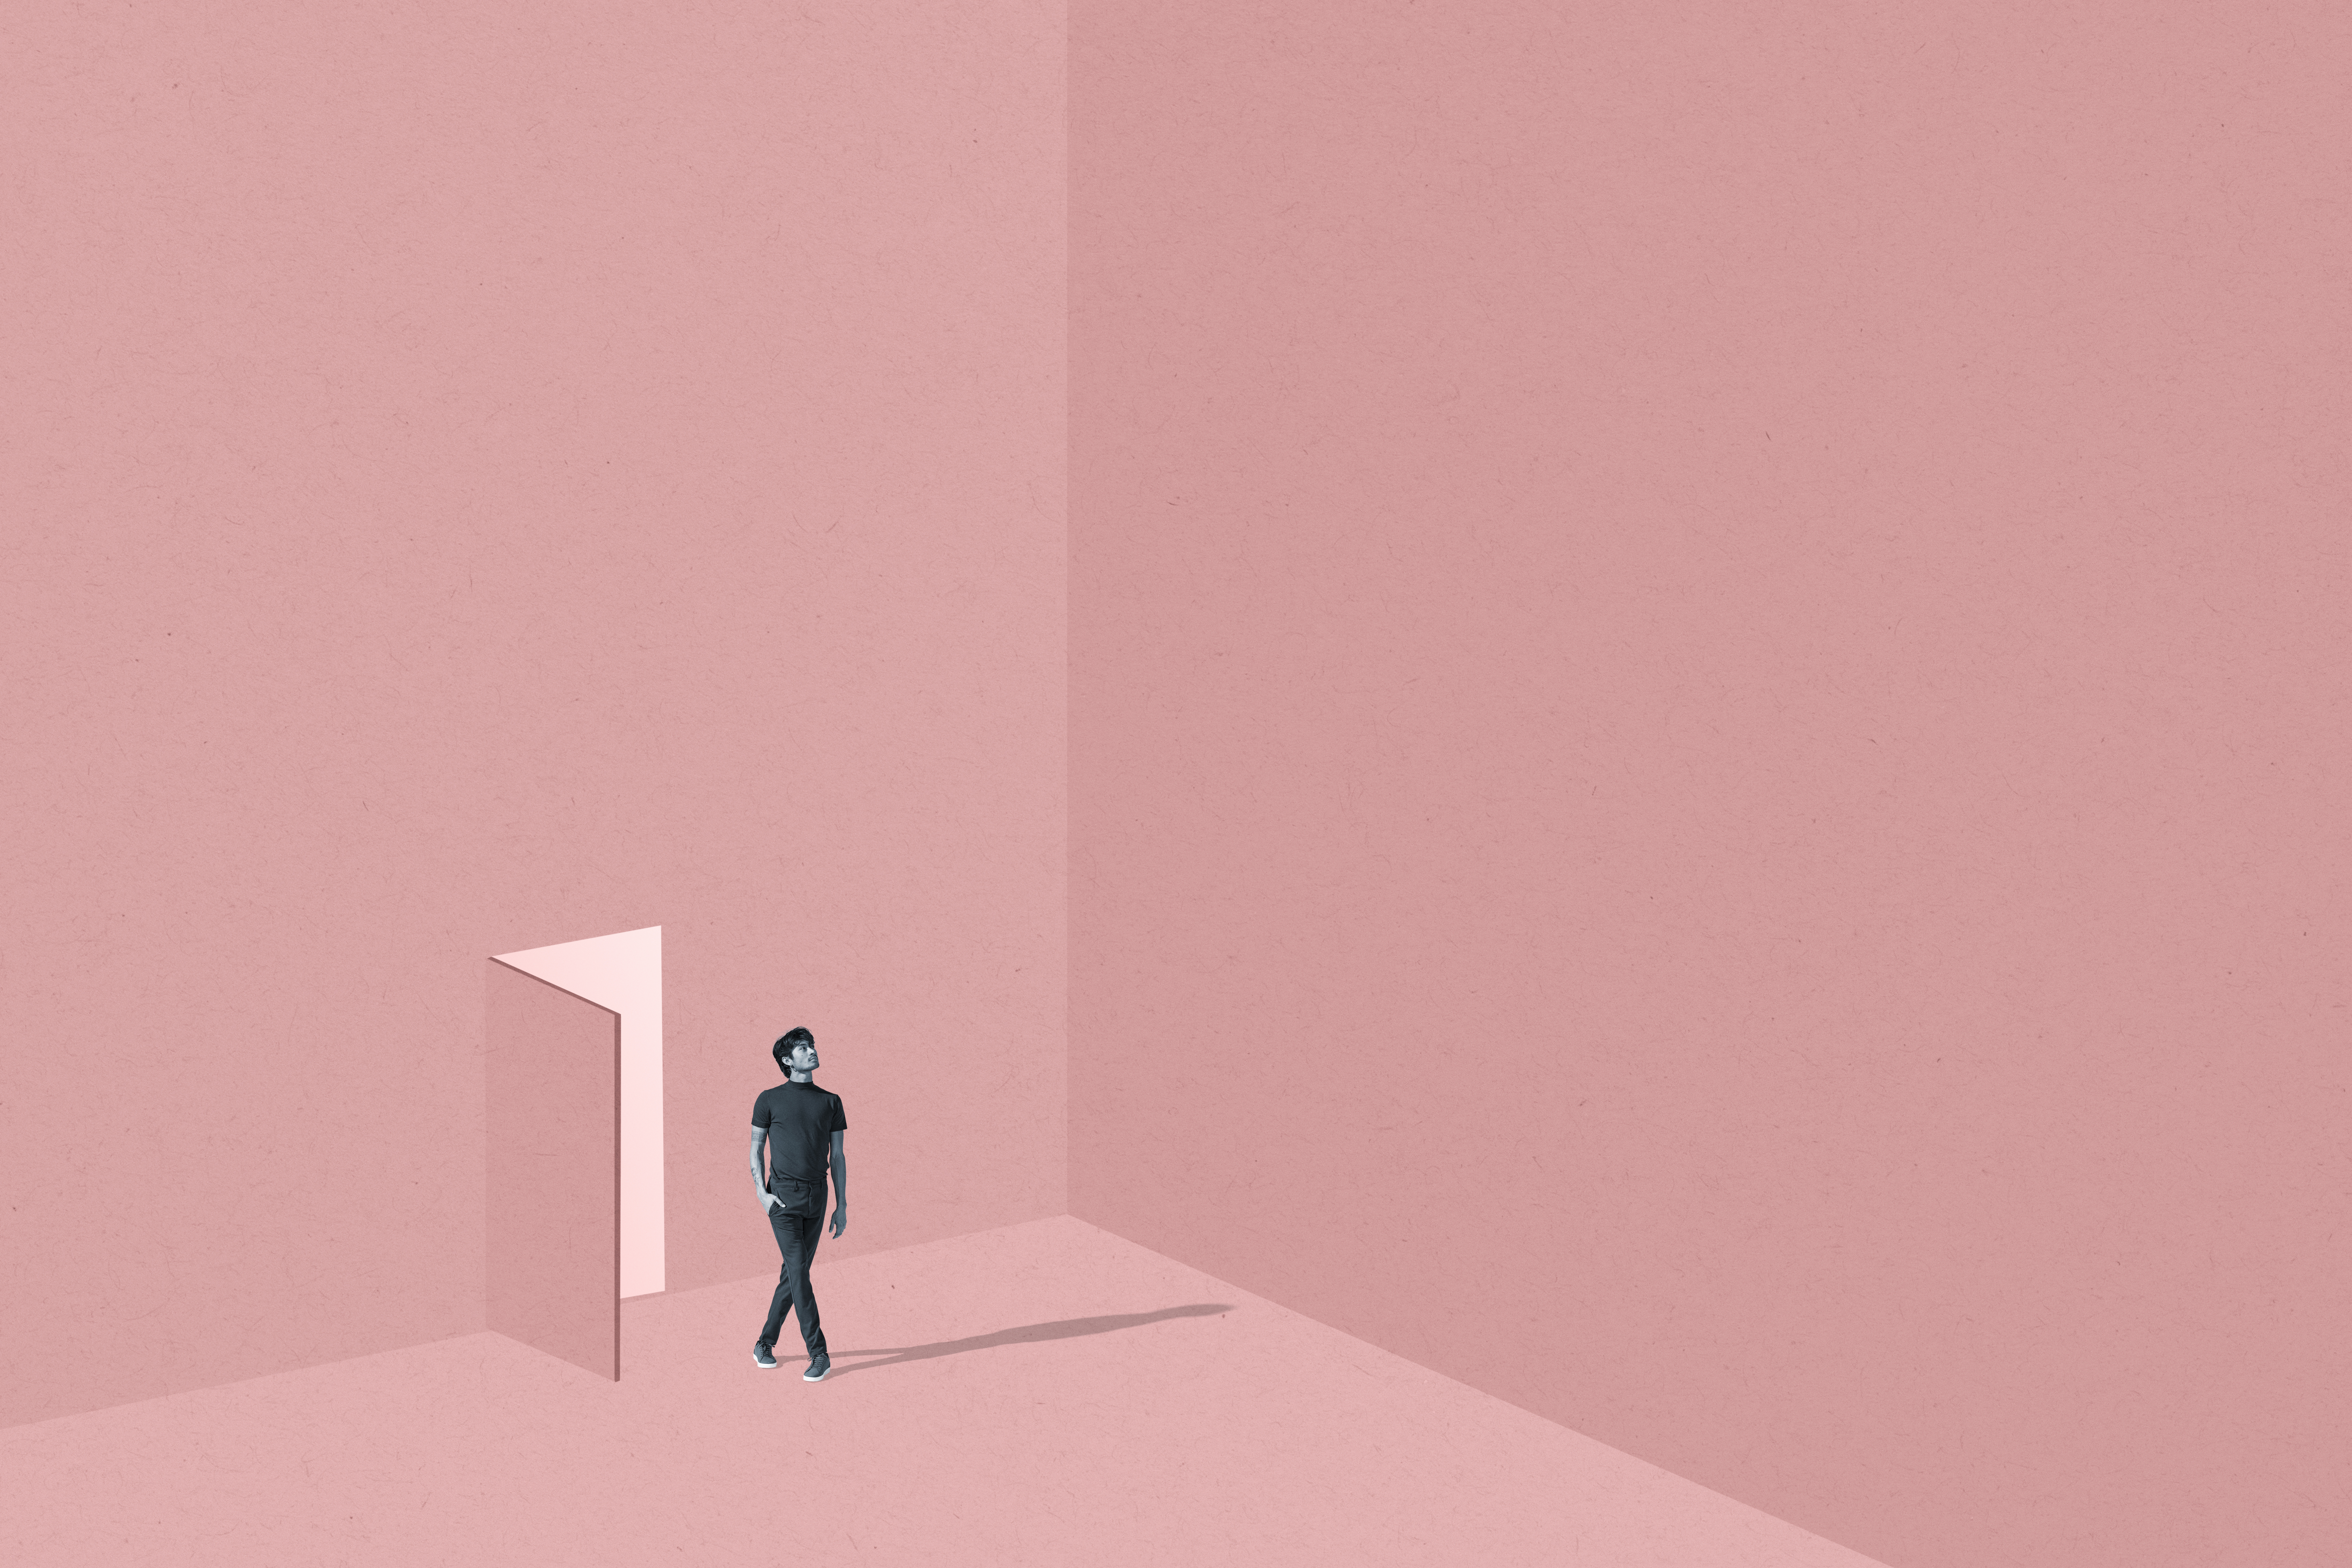 A young person walks through an open door into a spacious, blank, pink room. 